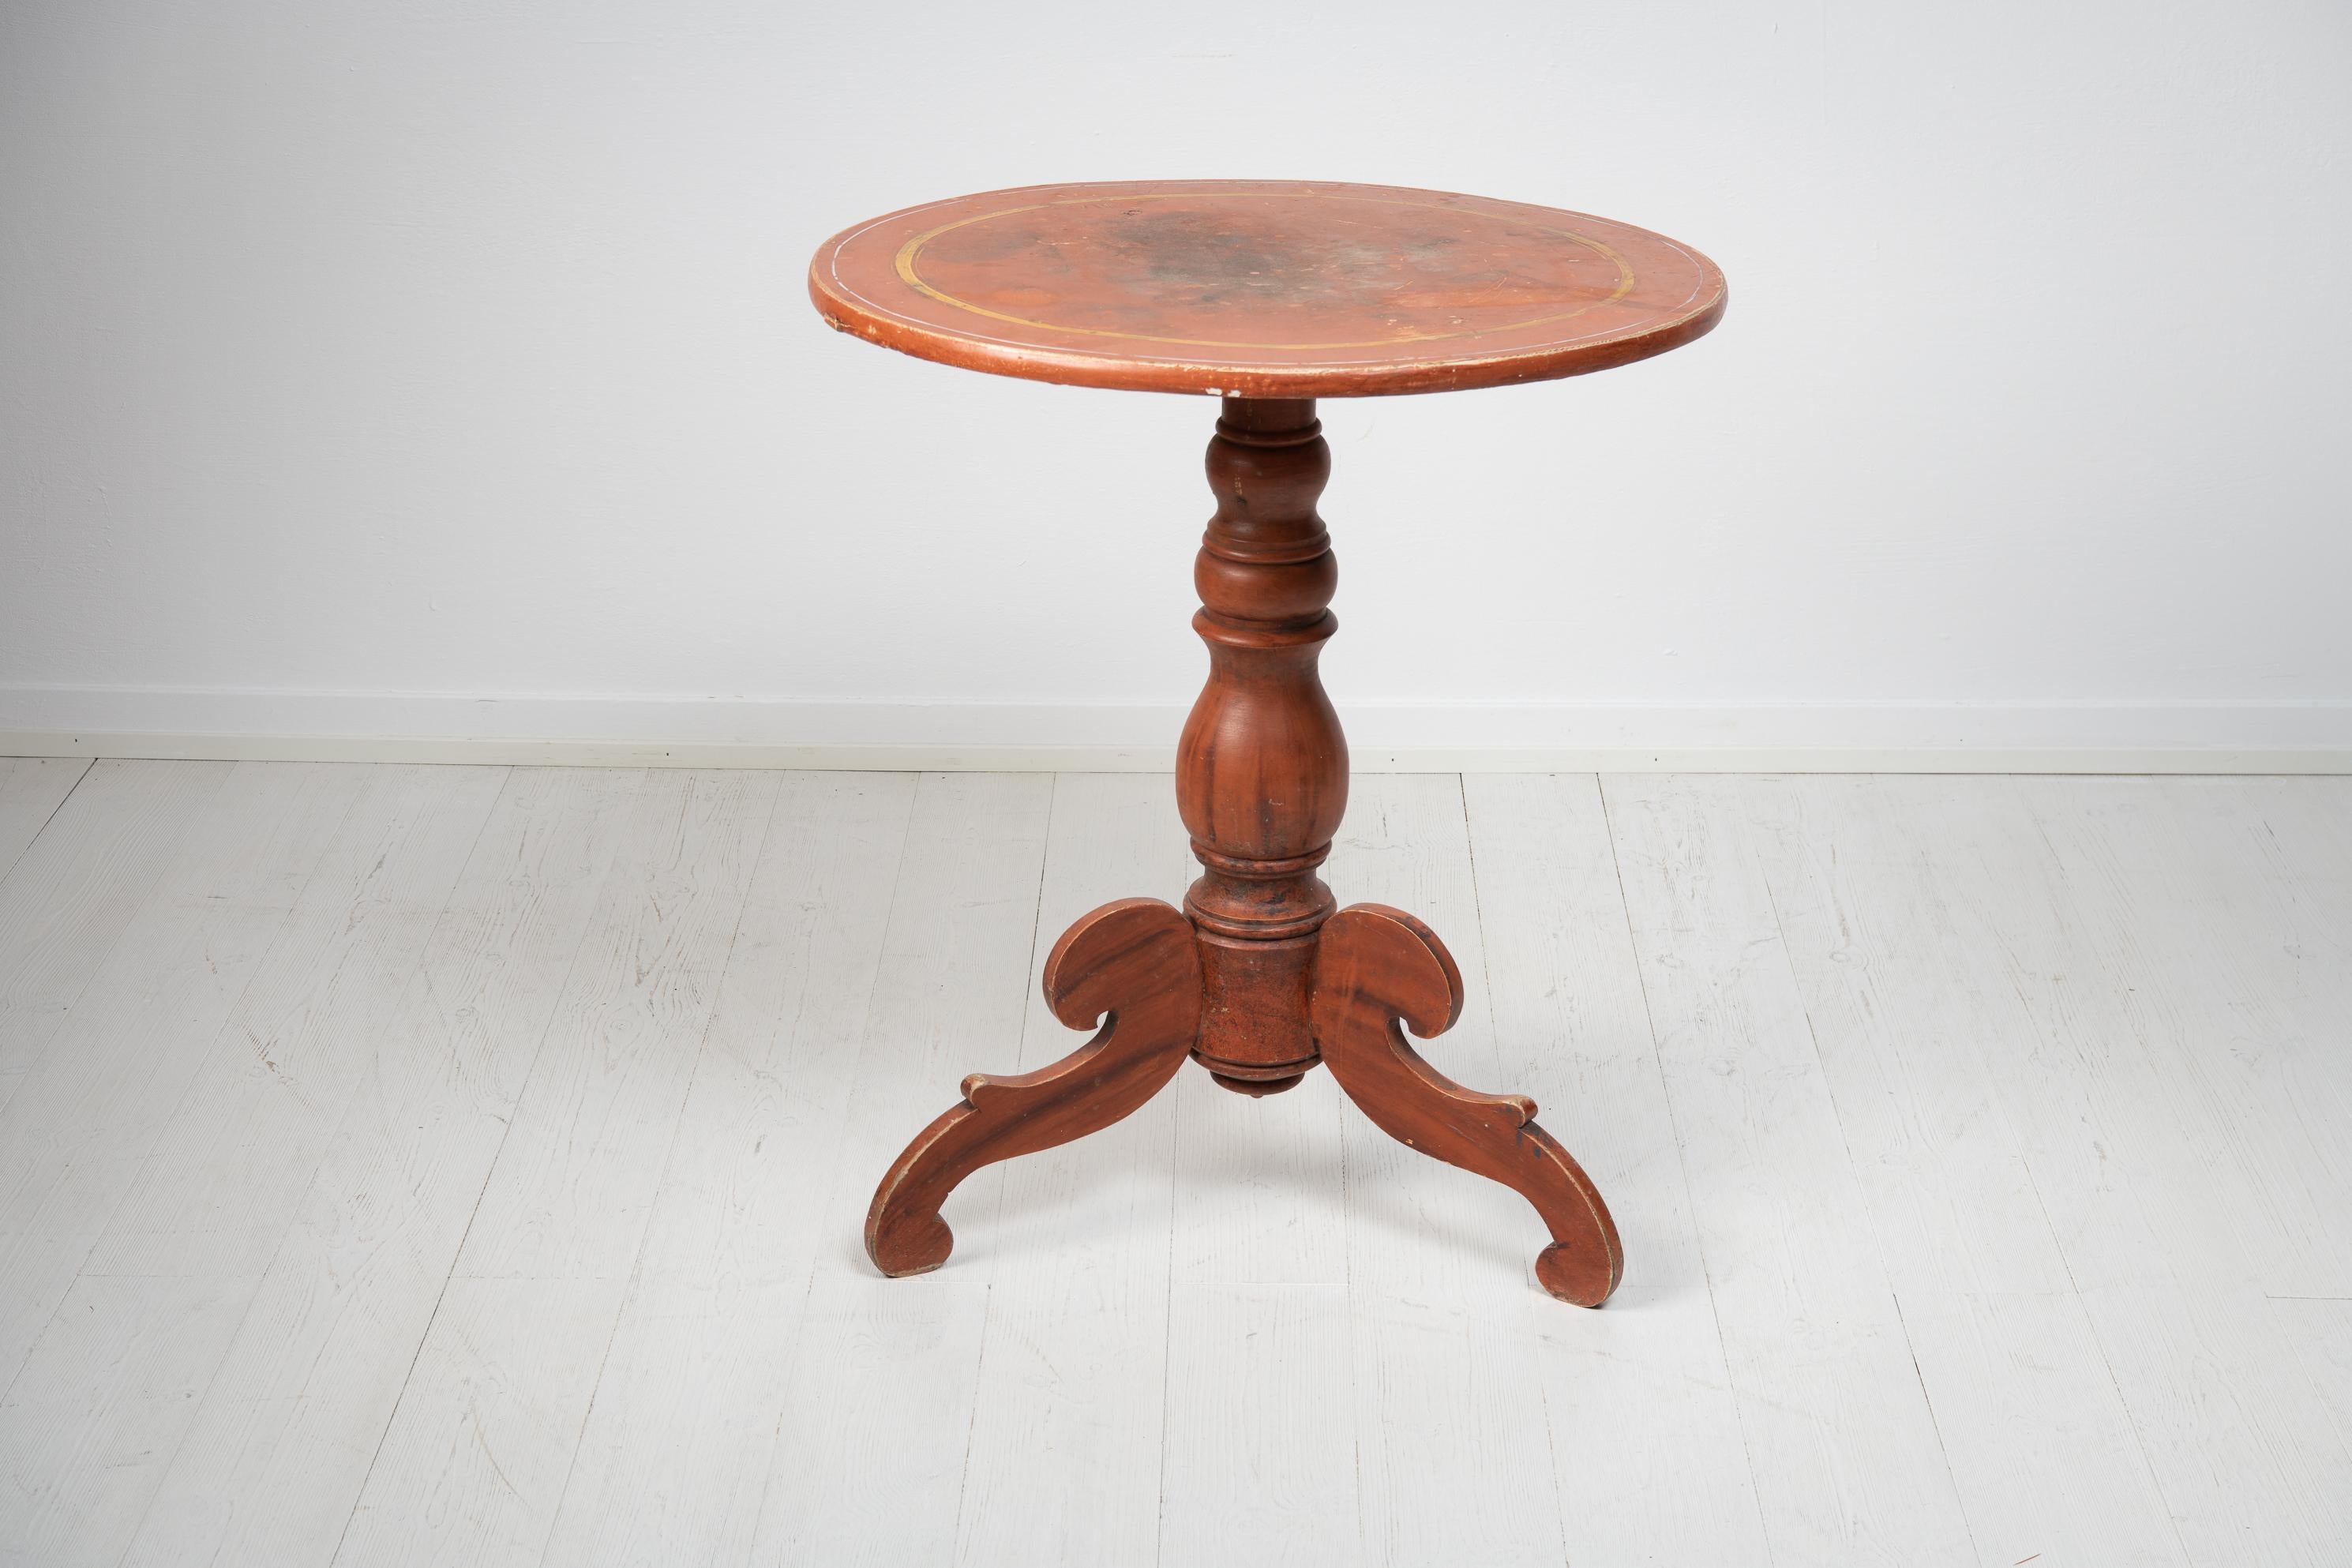 Rustikaler Sockeltisch mit einer runden Tischplatte aus Schweden. Der Tisch stammt aus den Jahren 1860 bis 1870 und ist aus bemalter Kiefer mit der Originalfarbe aus dem 19. Der Tisch hat einen schweren und stabilen Fuß. Der Tisch ist eine rustikale